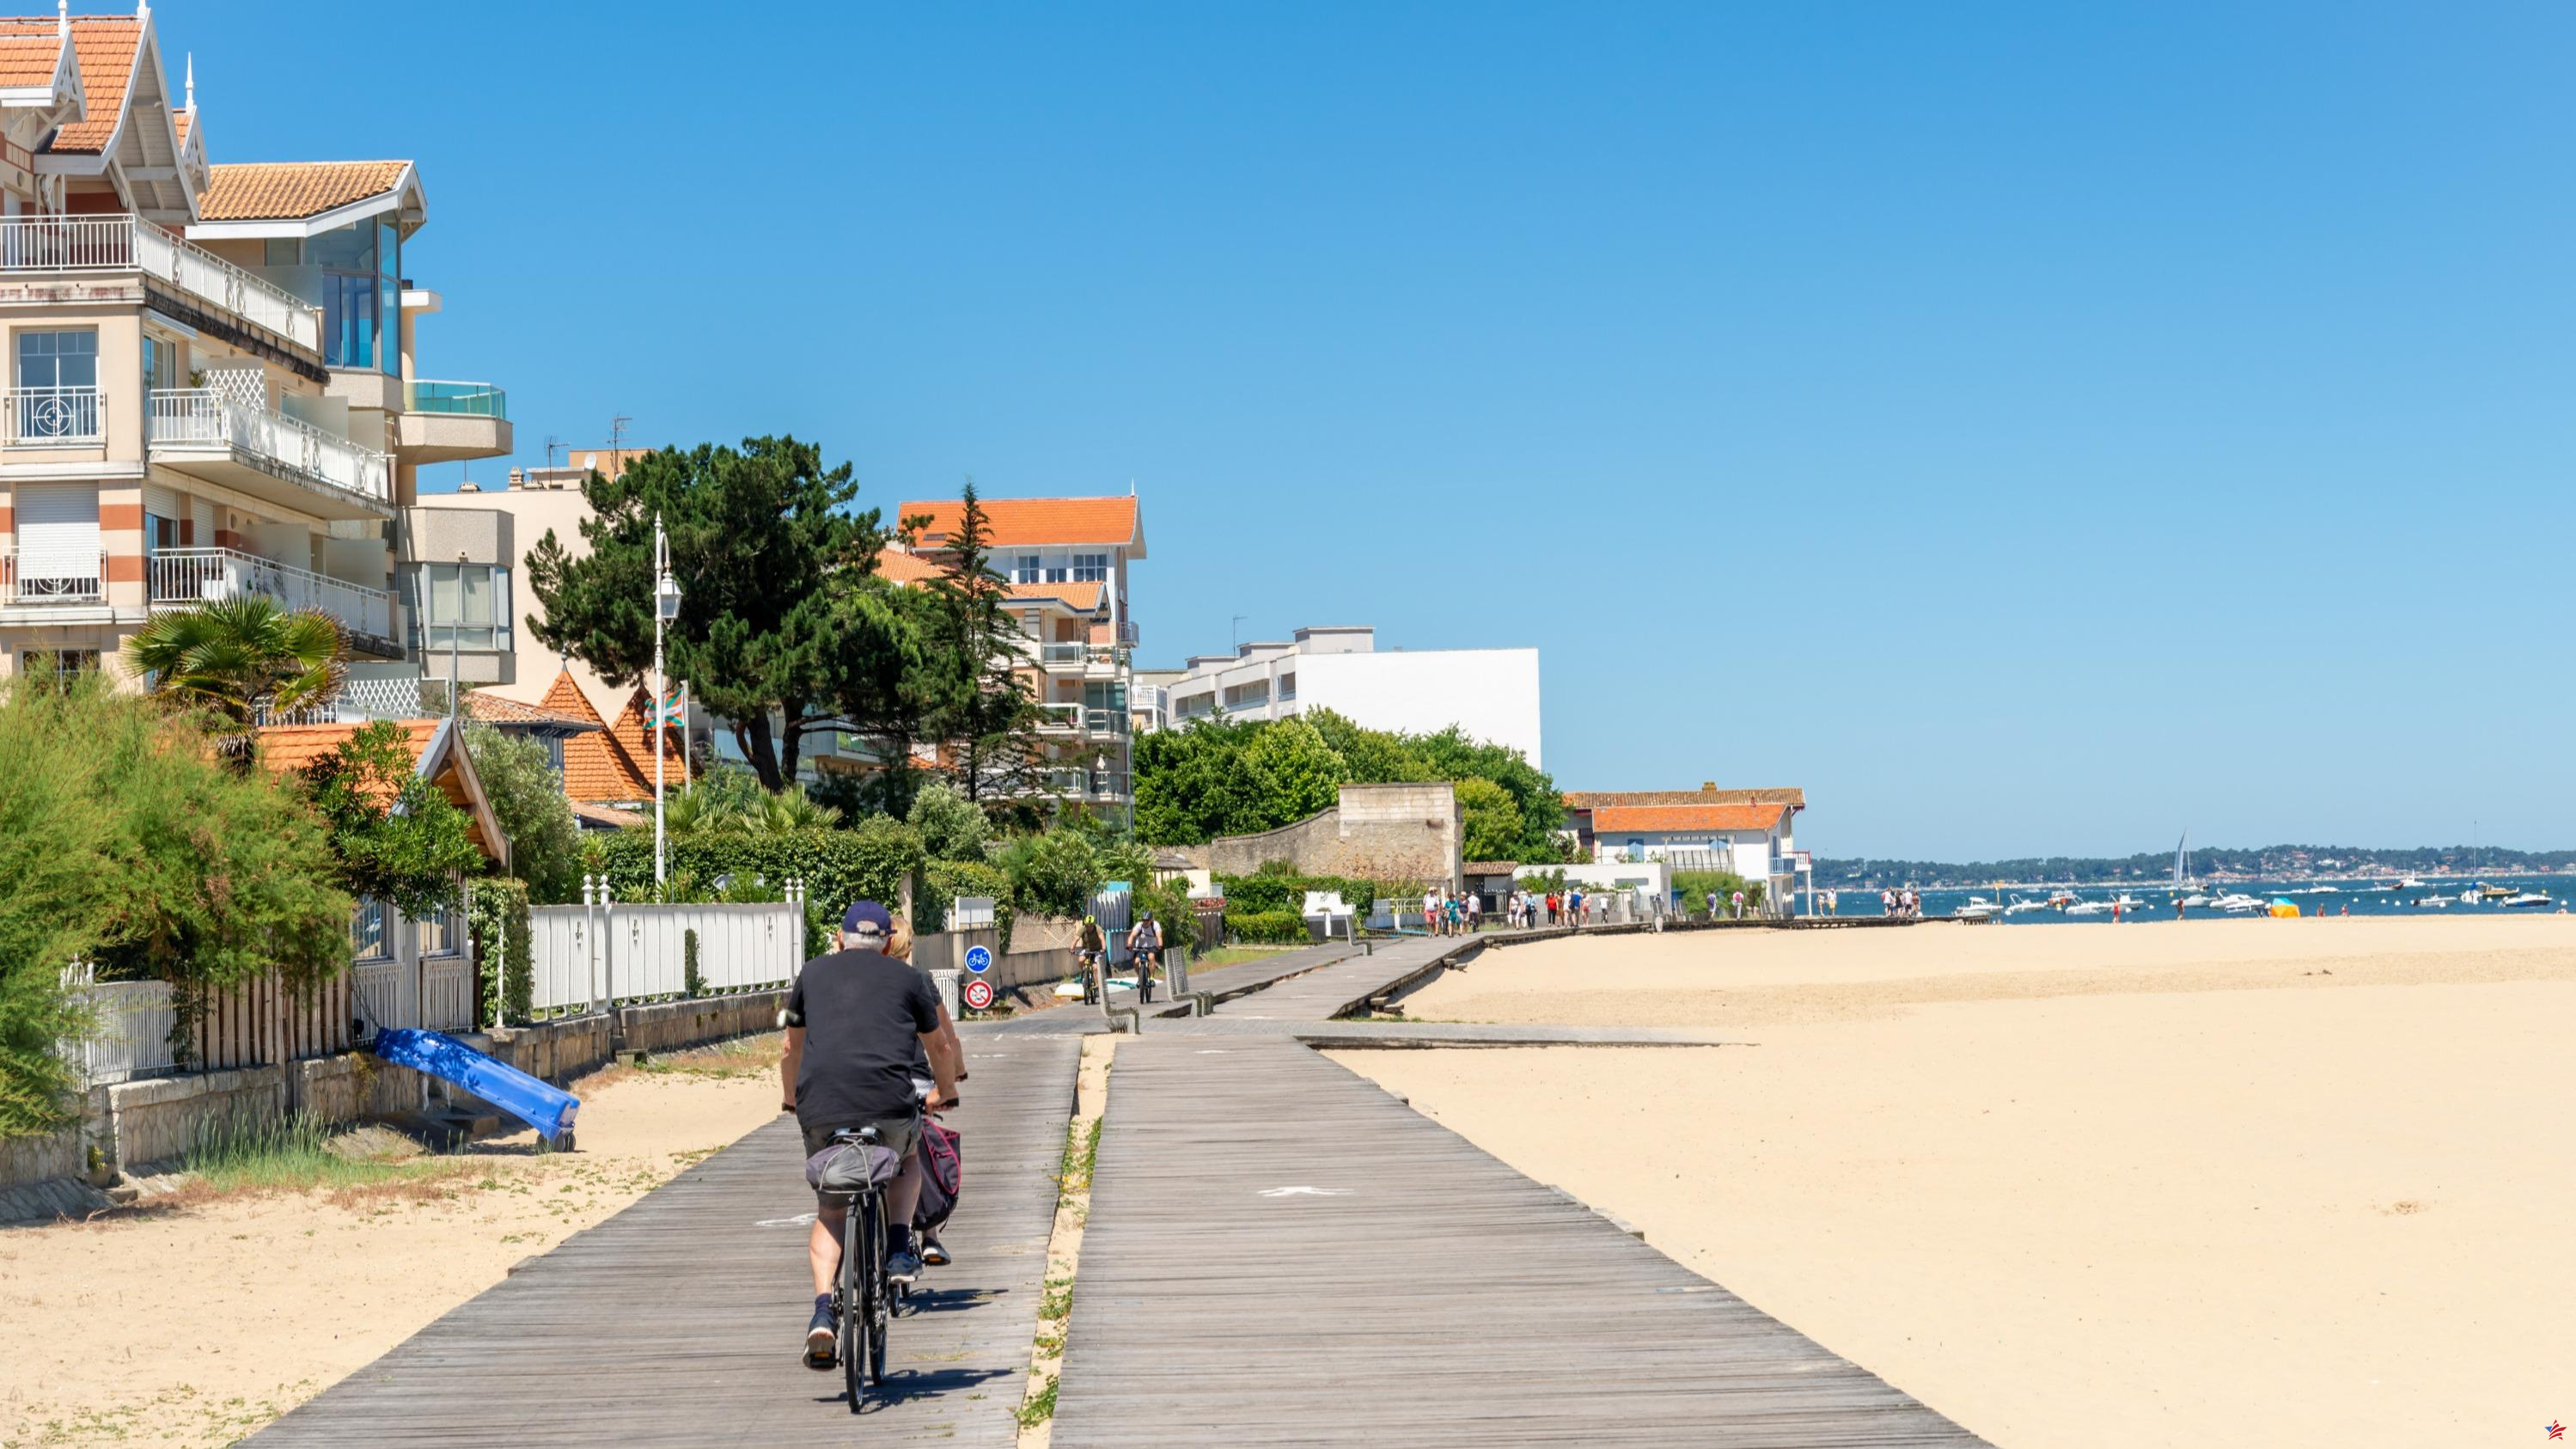 Gironde quiere crear 1.000 kilómetros de carriles bici adicionales hasta 2030